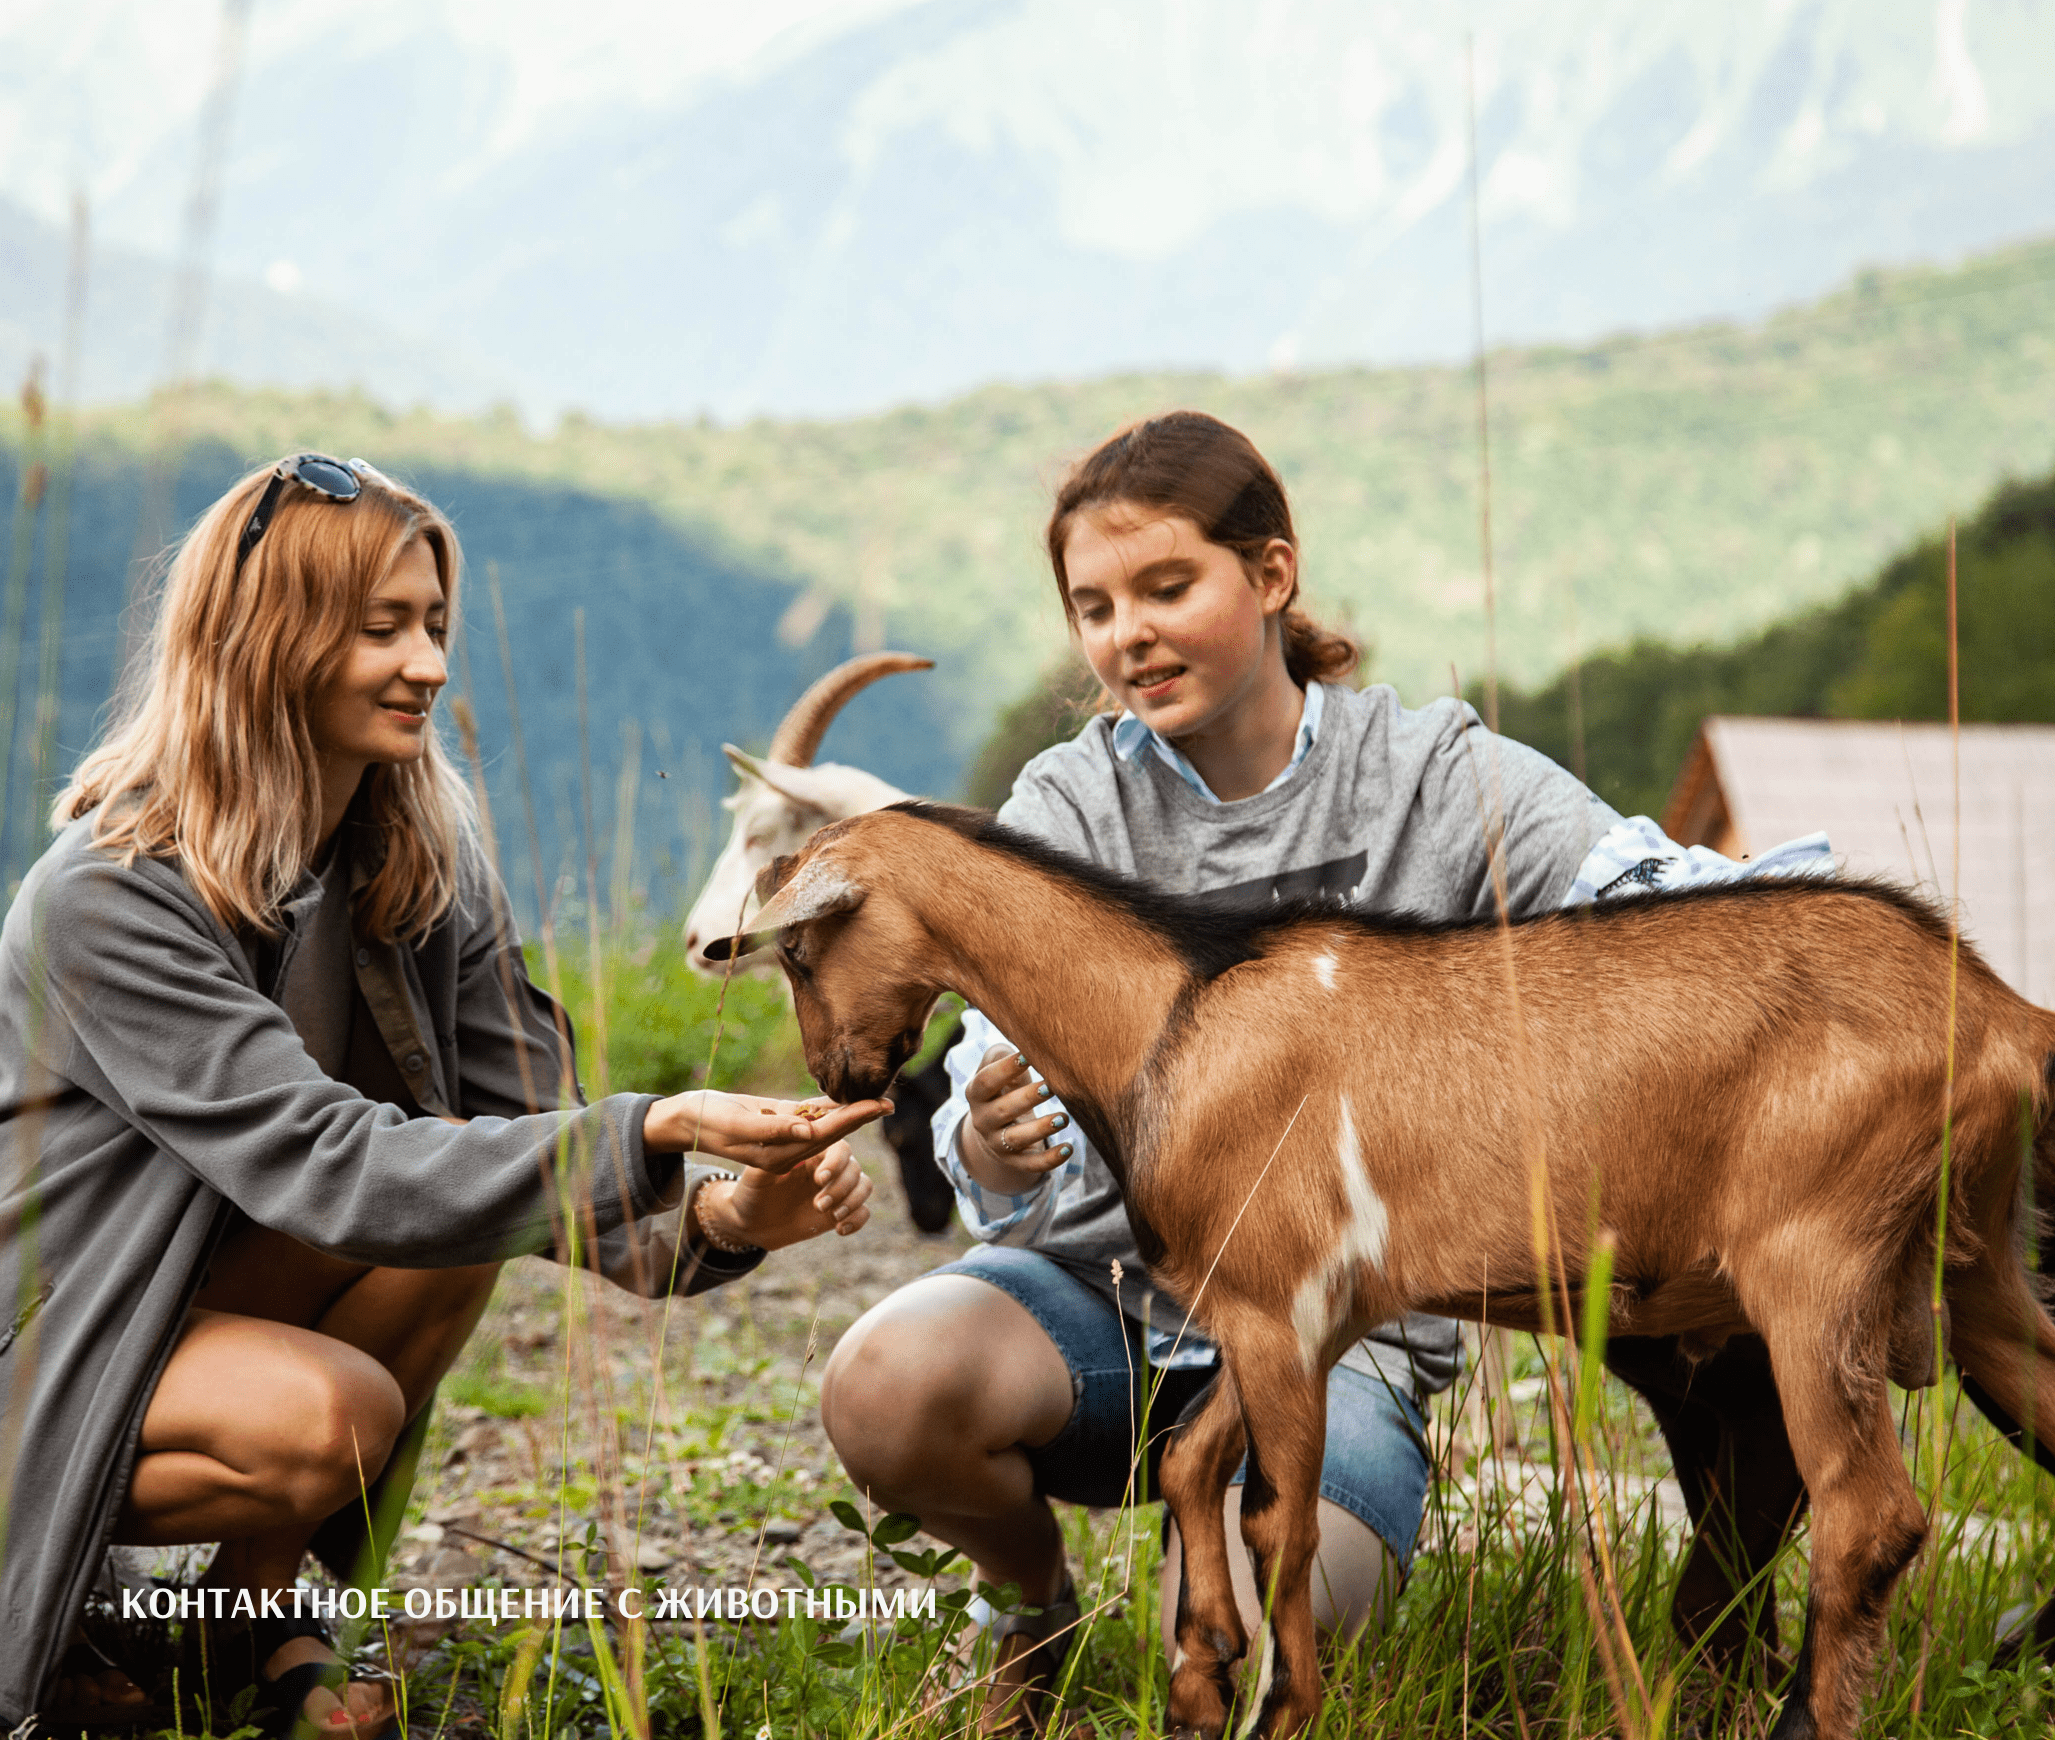 Girls feeding a goat